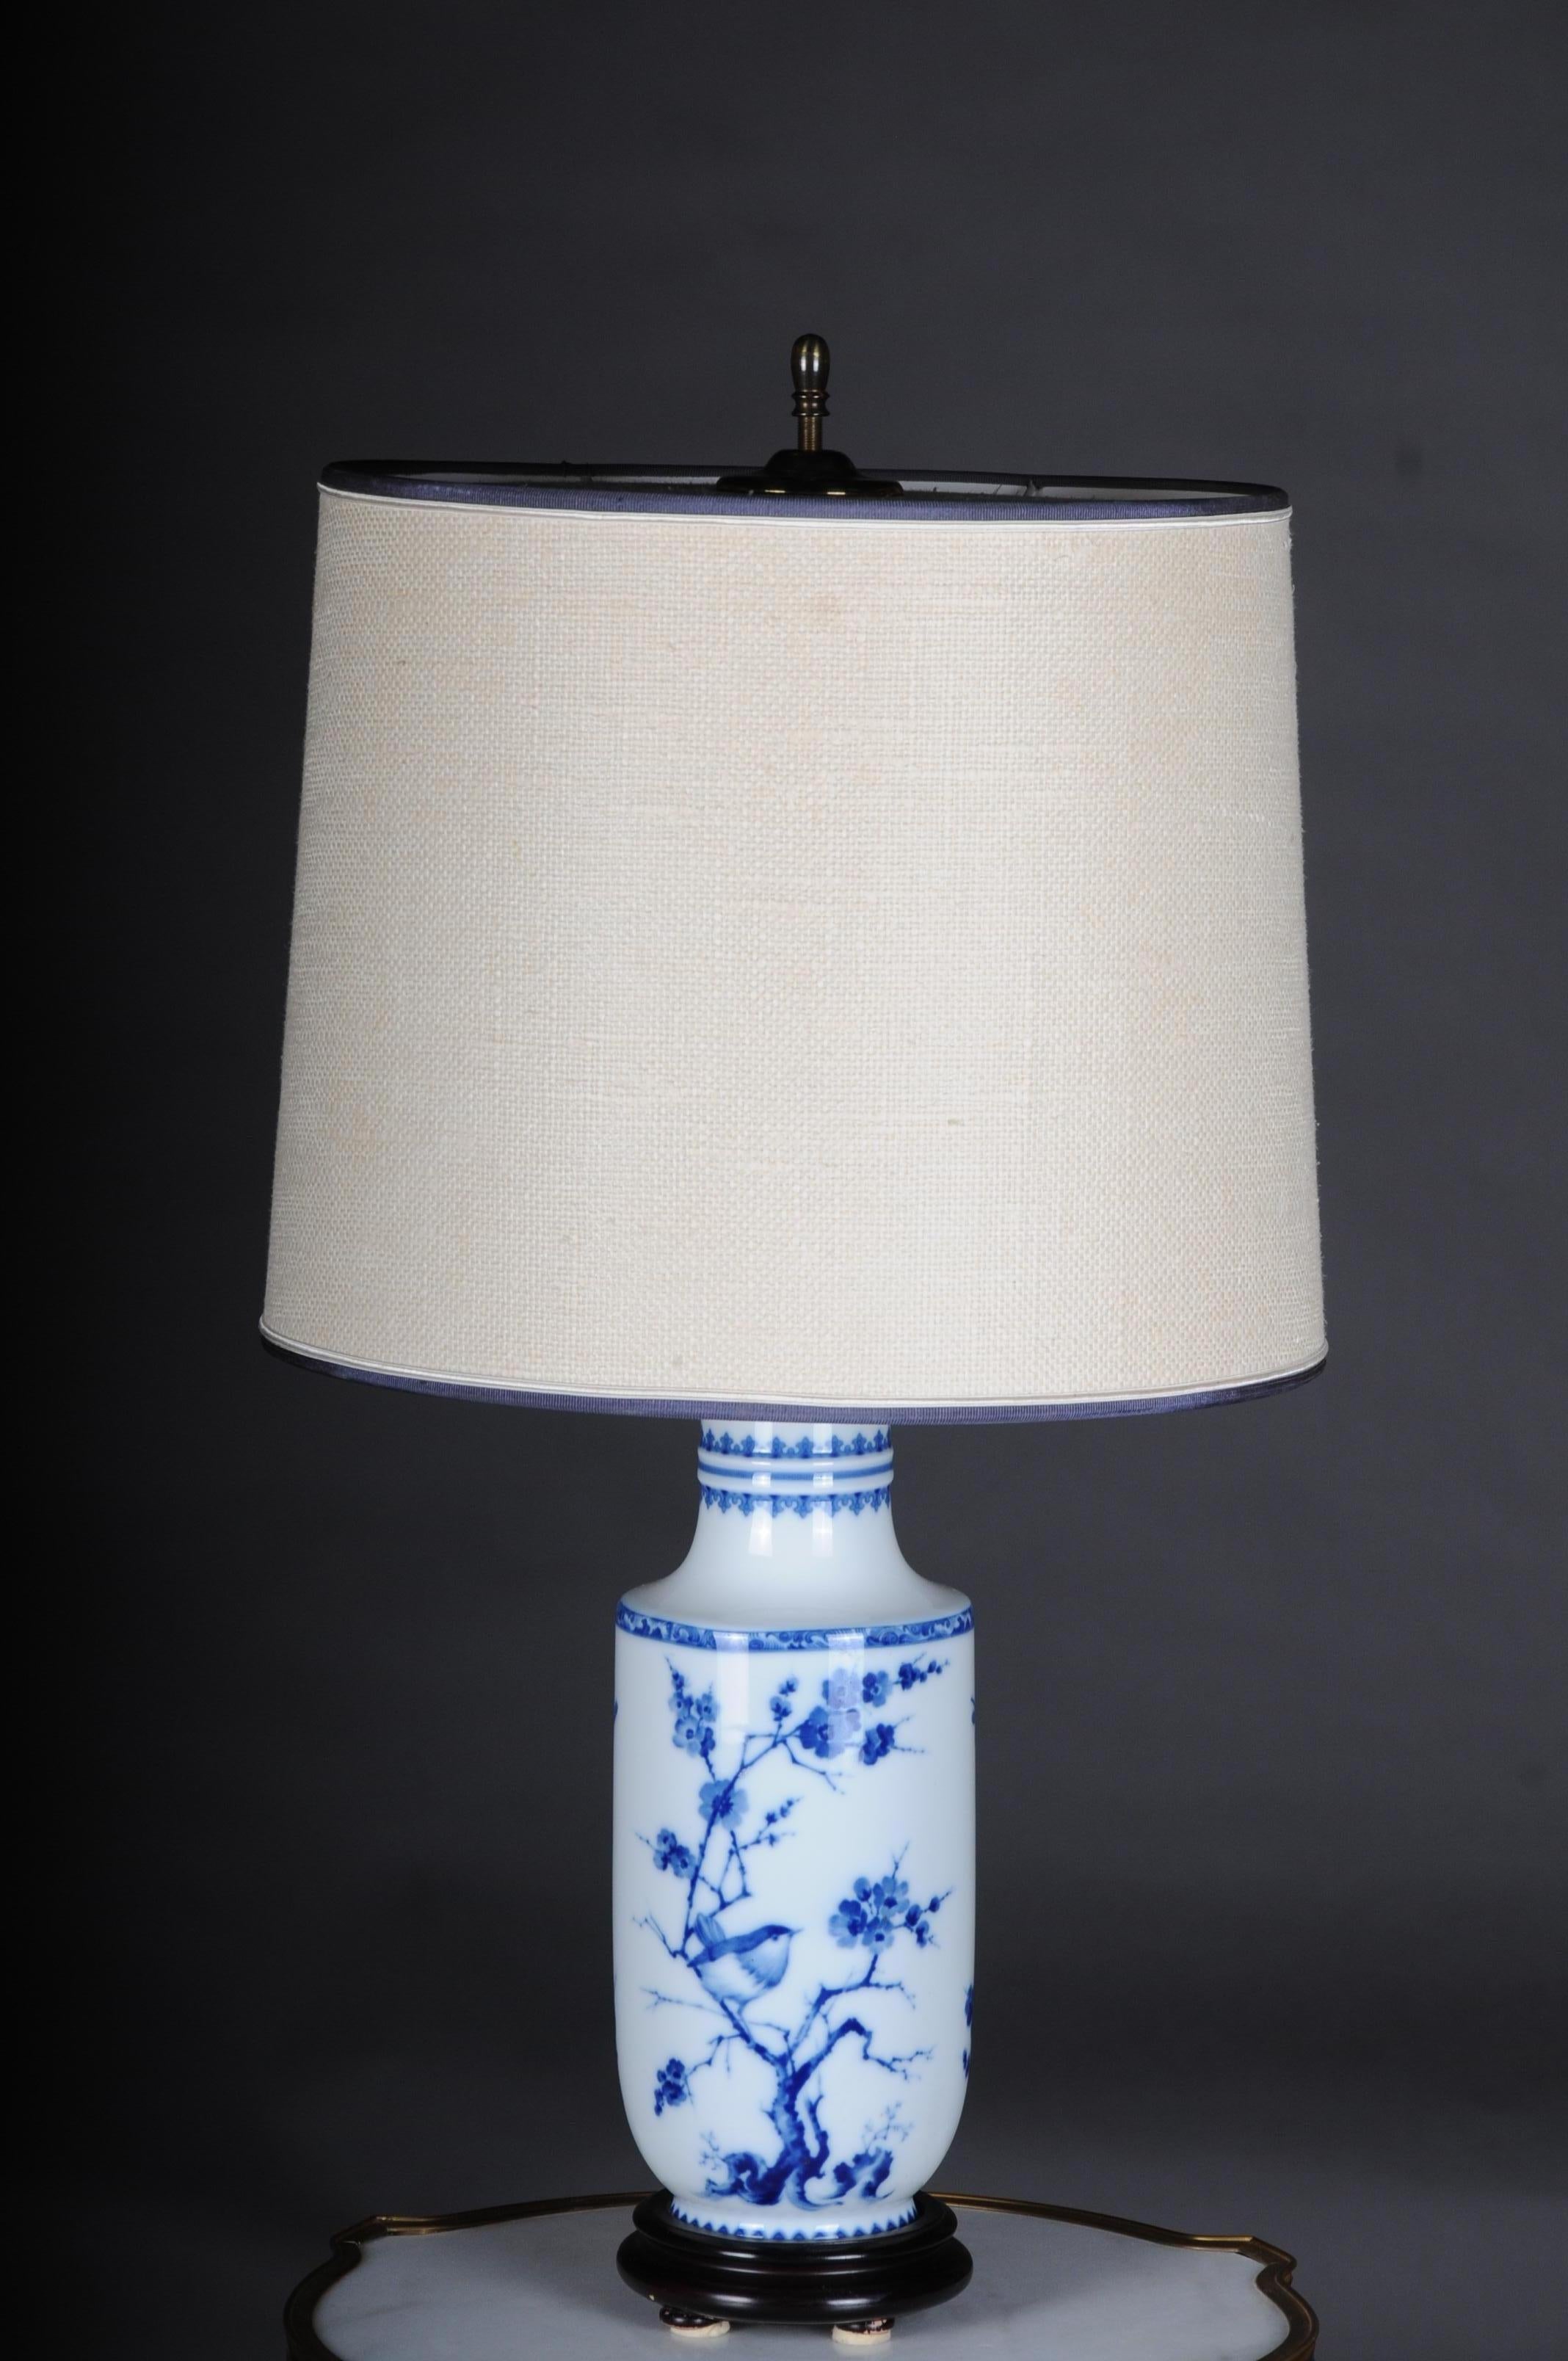 Paire de lampes de table asiatiques ou lampes de table, porcelaine, 20ème siècle asiatique

Peinture bleu sous glaçure sur porcelaine blanche, asiatique ou asiatique. Electrifié et testé. Extrêmement élégant et noble. Probablement le 20e